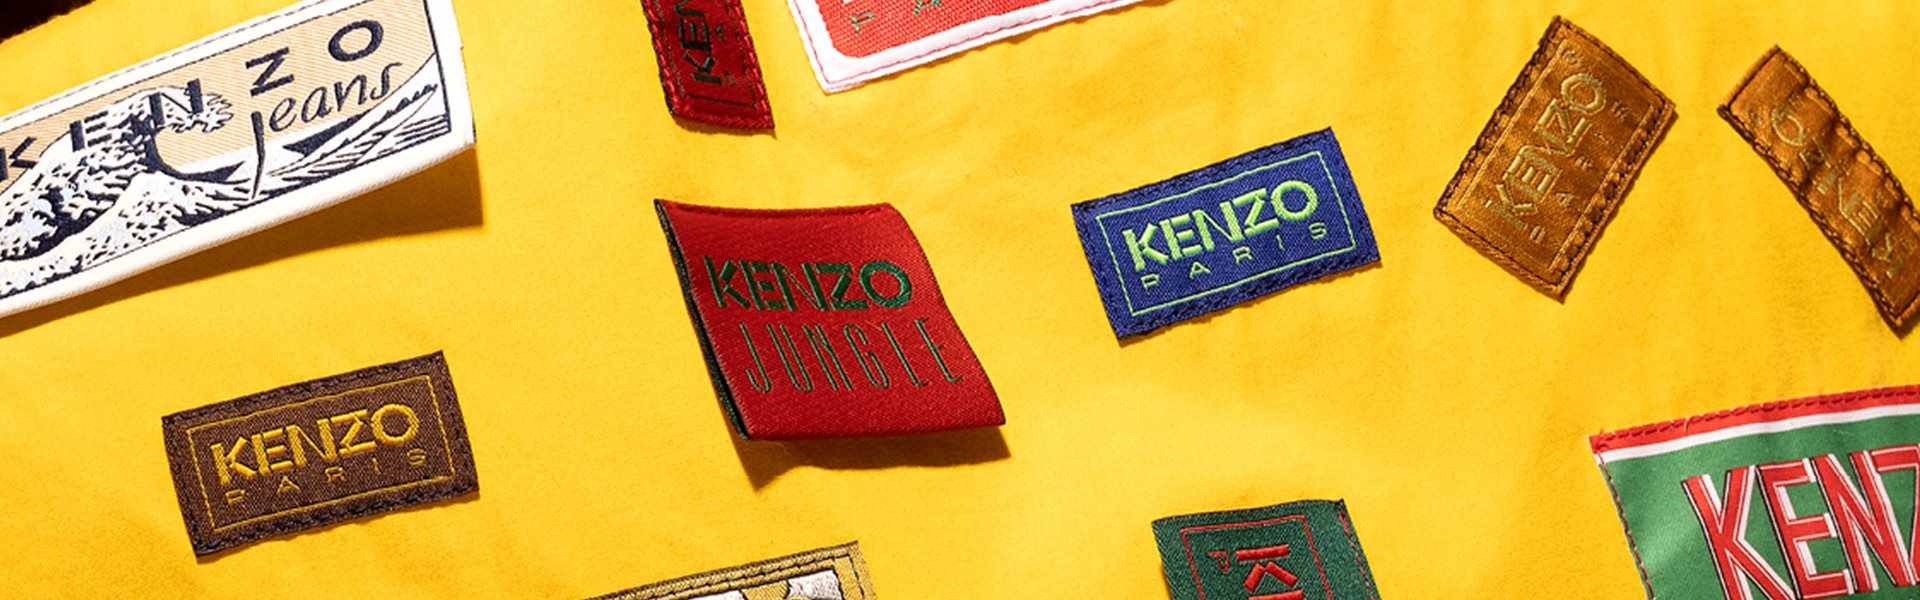 Kenzo varumärkesbild